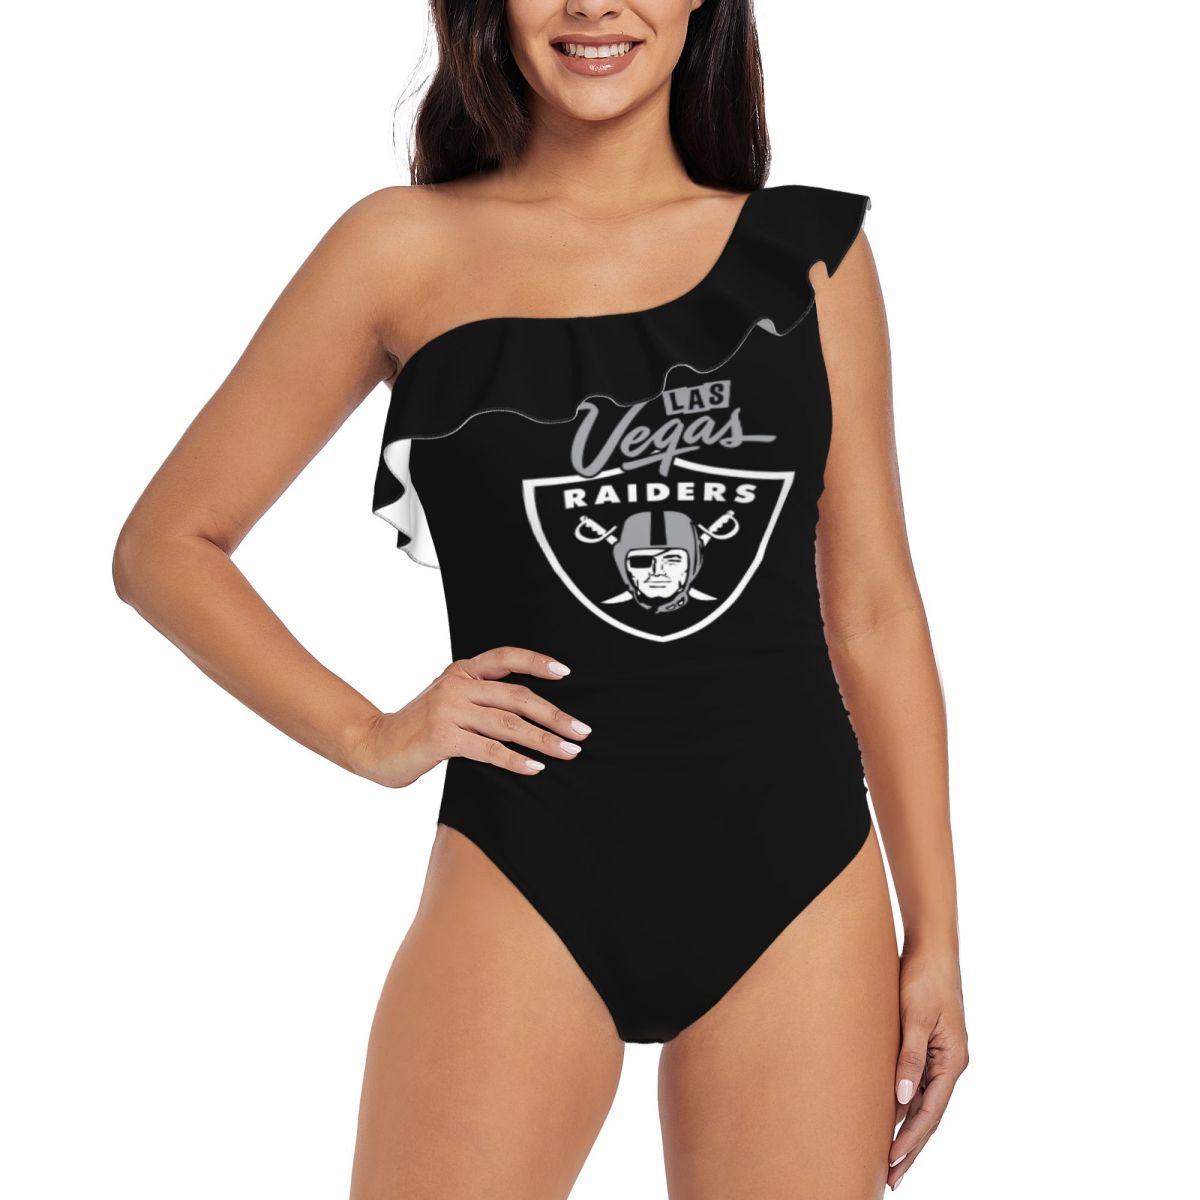 Las Vegas Raiders Black One Shoulder Ruffle Bathing Suit